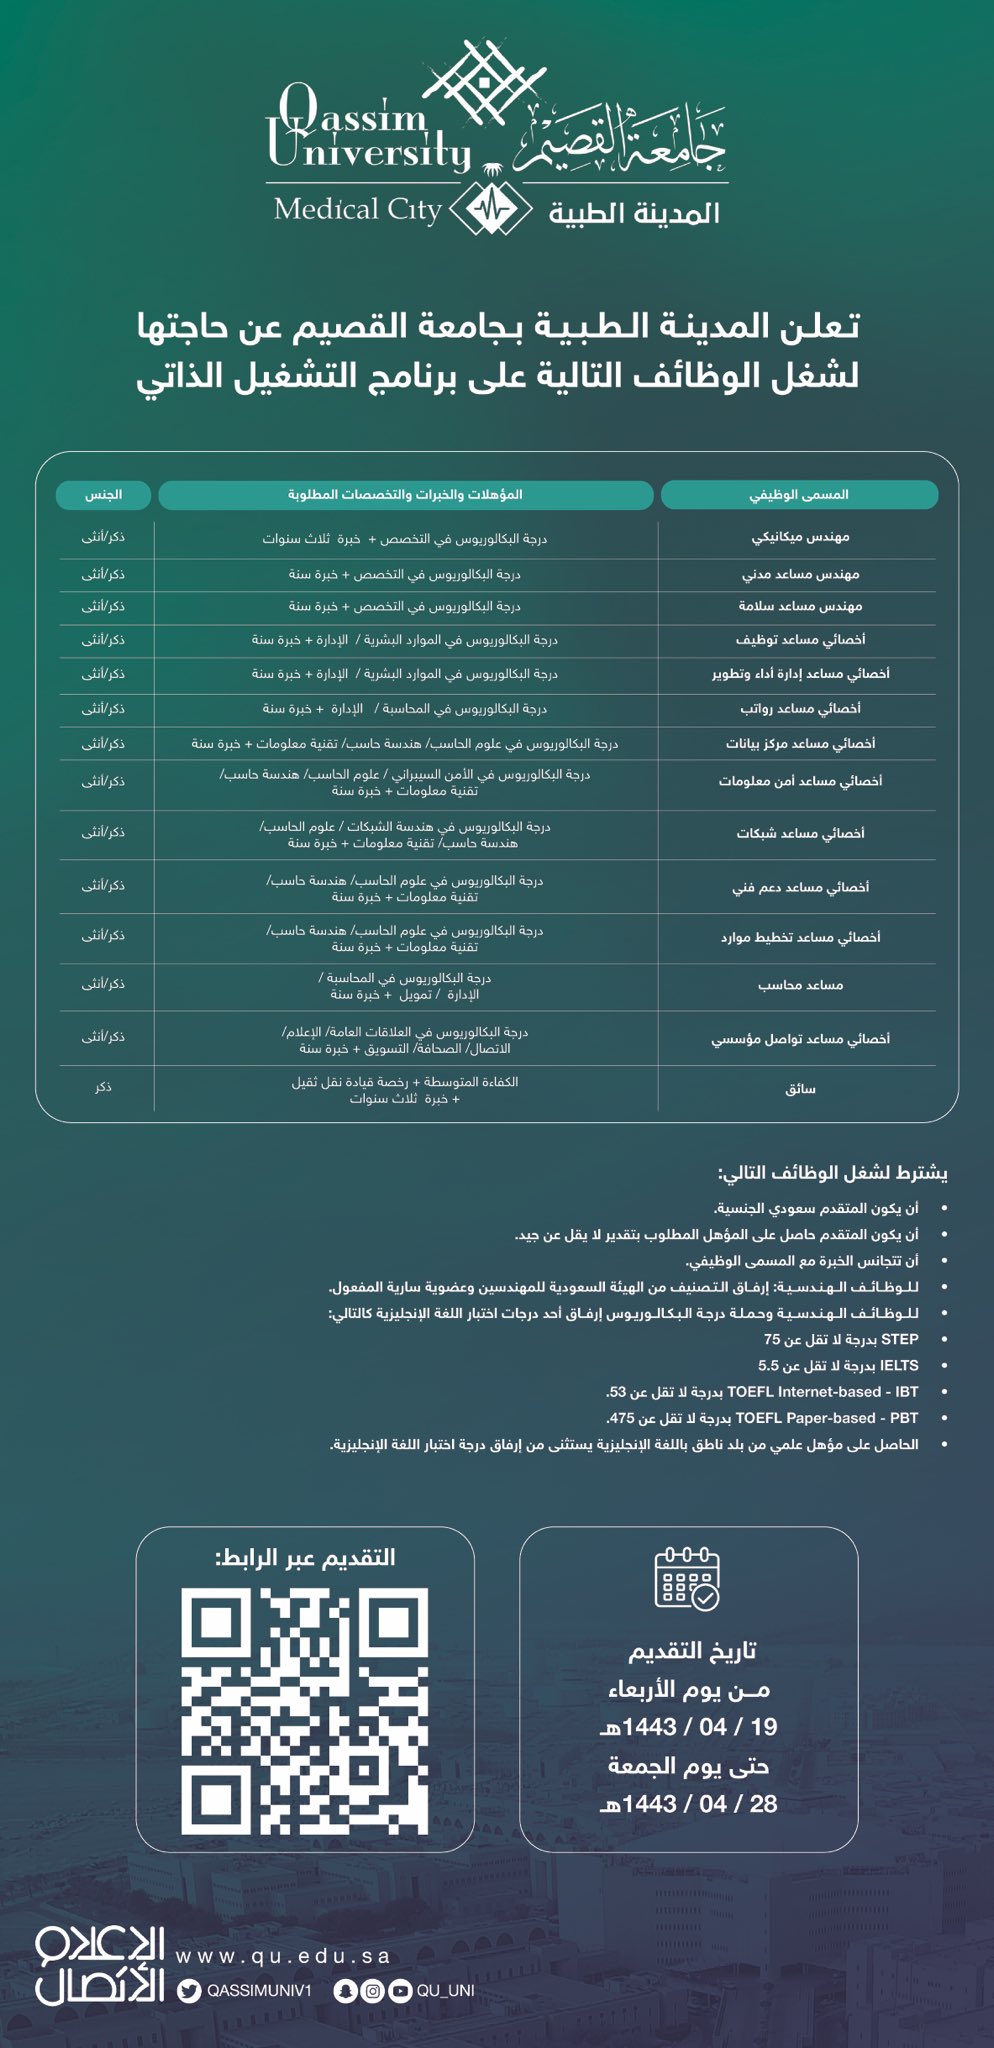 محاسبة_مالية - وظائف إدارية وهندسية وتقنية وسائقين للرجال والنساء في جامعة القصيم 3-110